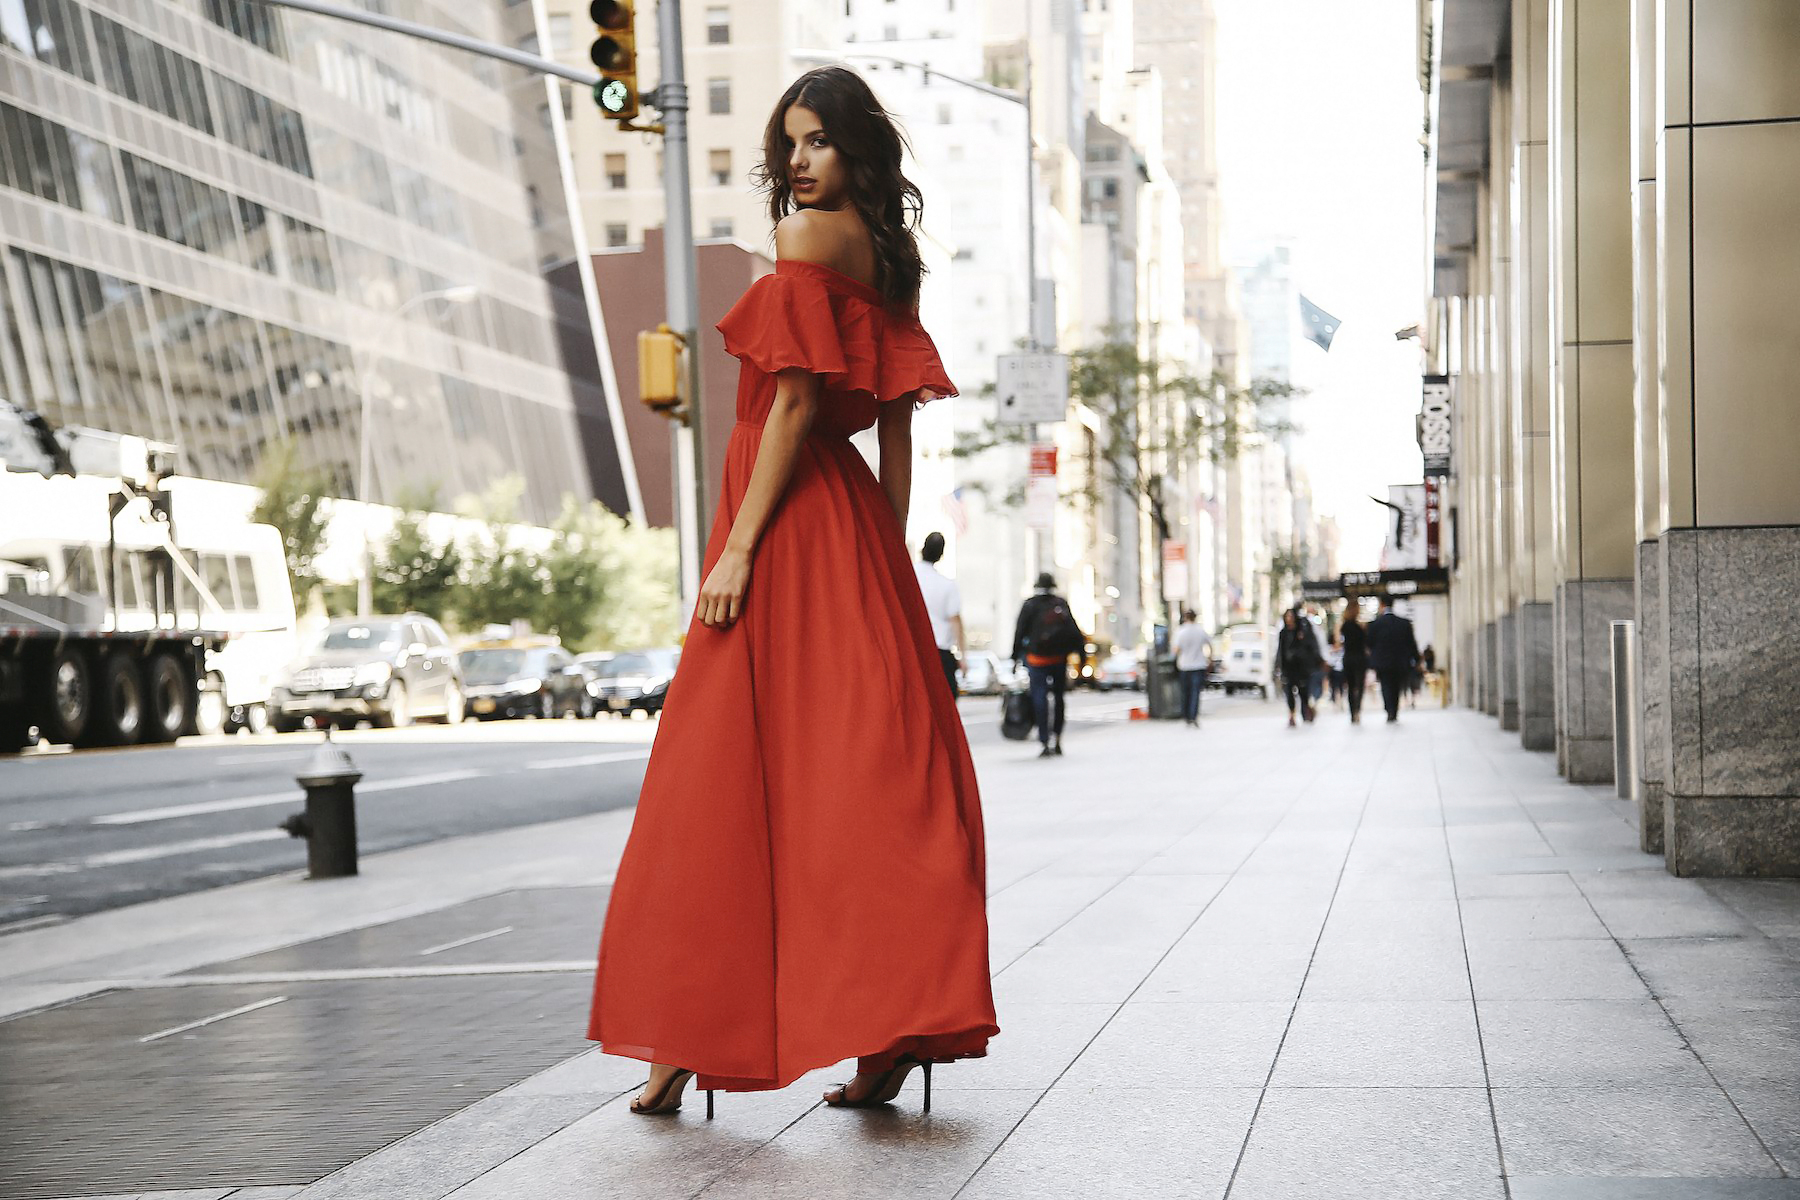 People 1800x1200 Bruna Lirio women model Brazilian street city red dress looking over shoulder heels